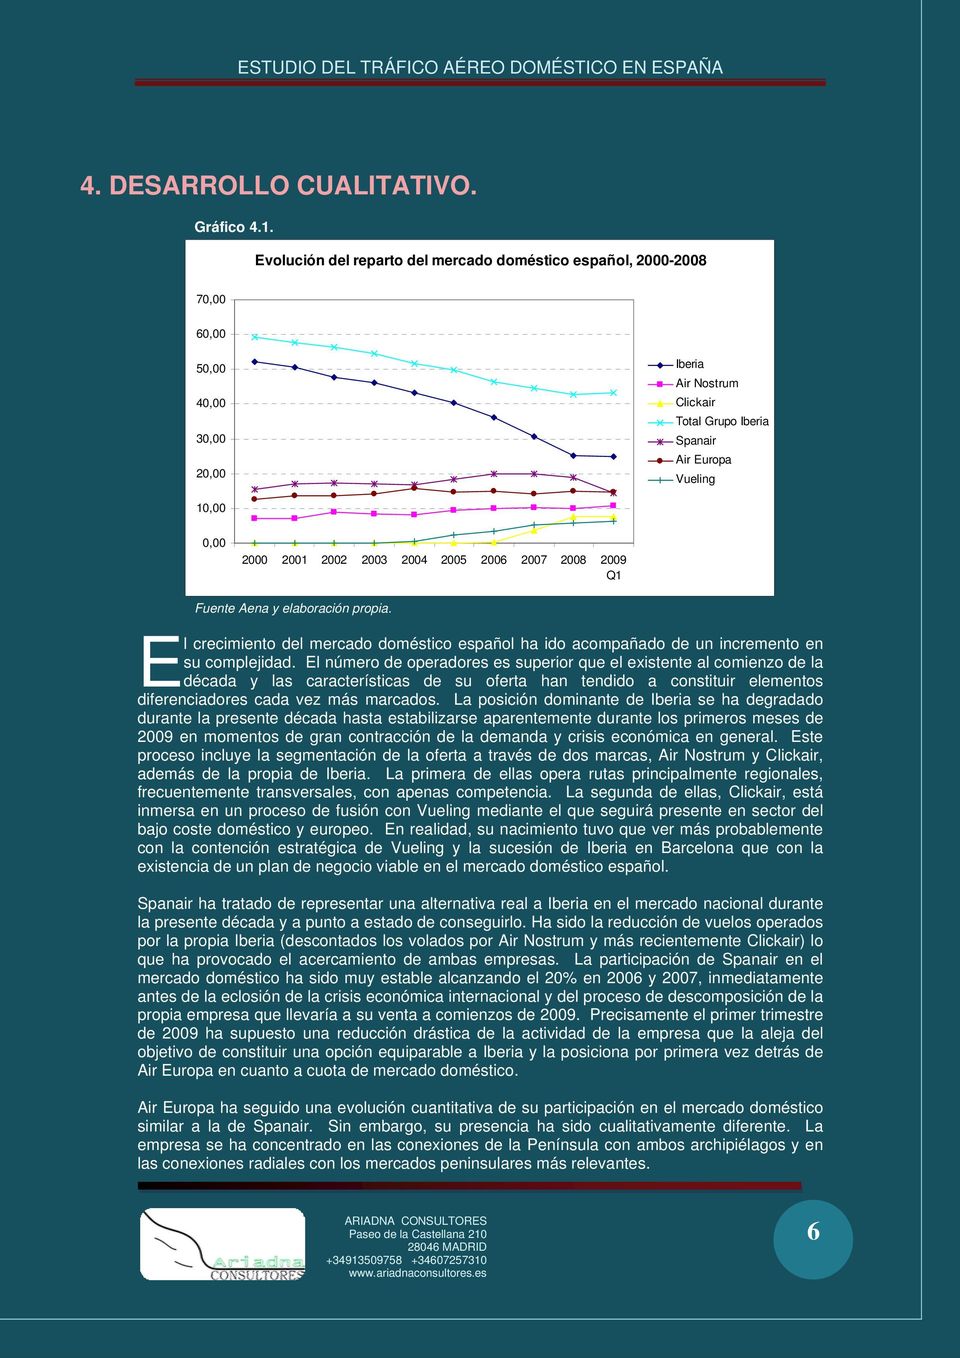 2003 2004 2005 2006 2007 20 2009 Q1 Fuente Aena y elaboración propia. E l crecimiento del mercado doméstico español ha ido acompañado de un incremento en su complejidad.